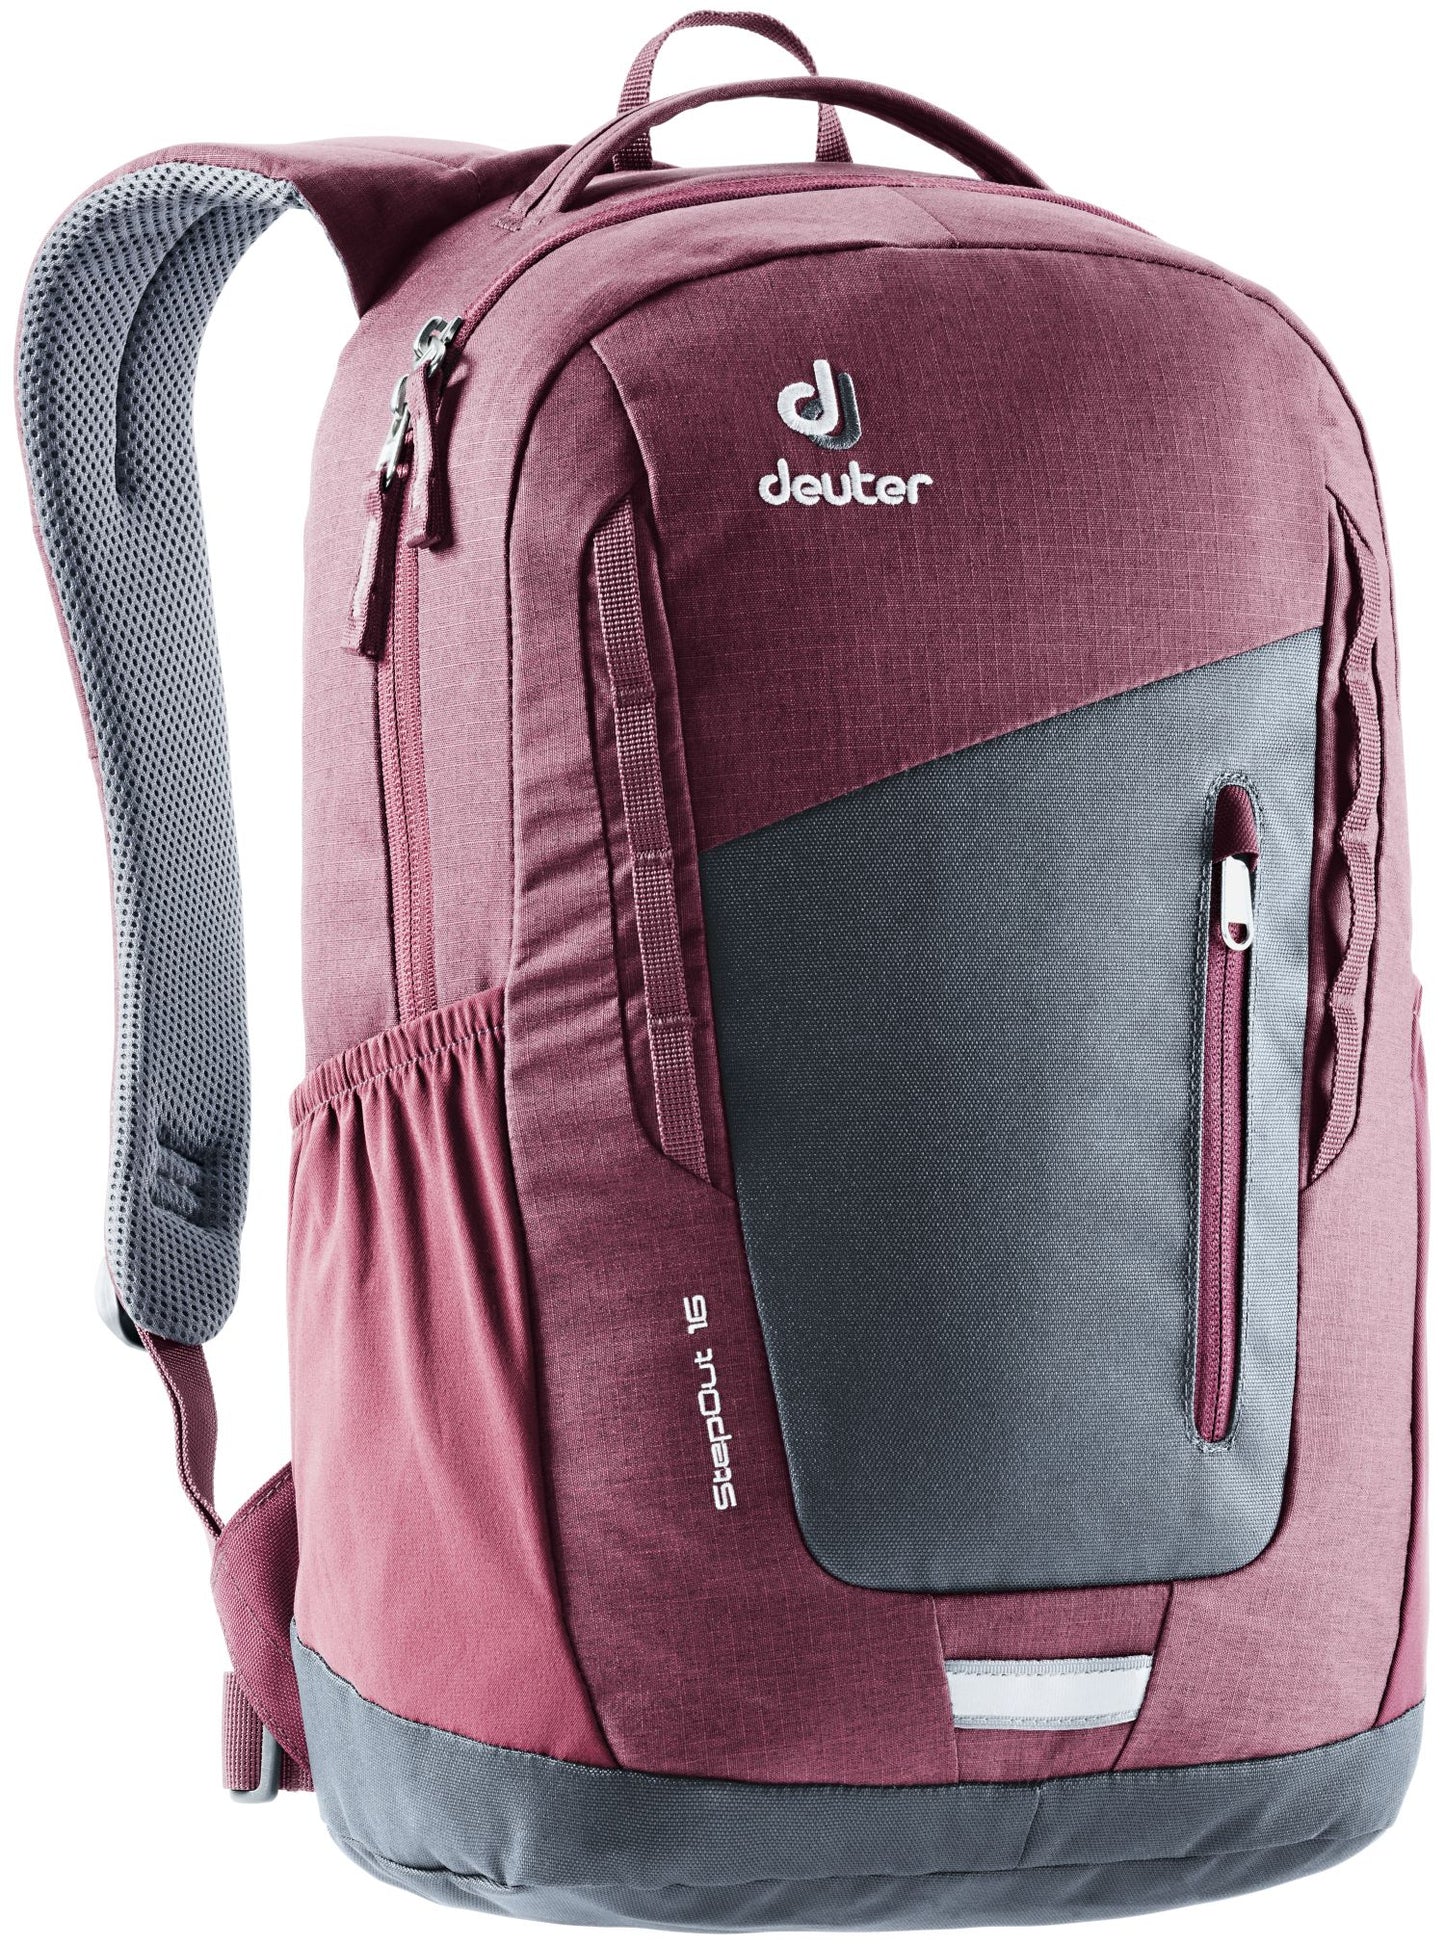 Deuter - Stepout 16 Backpack